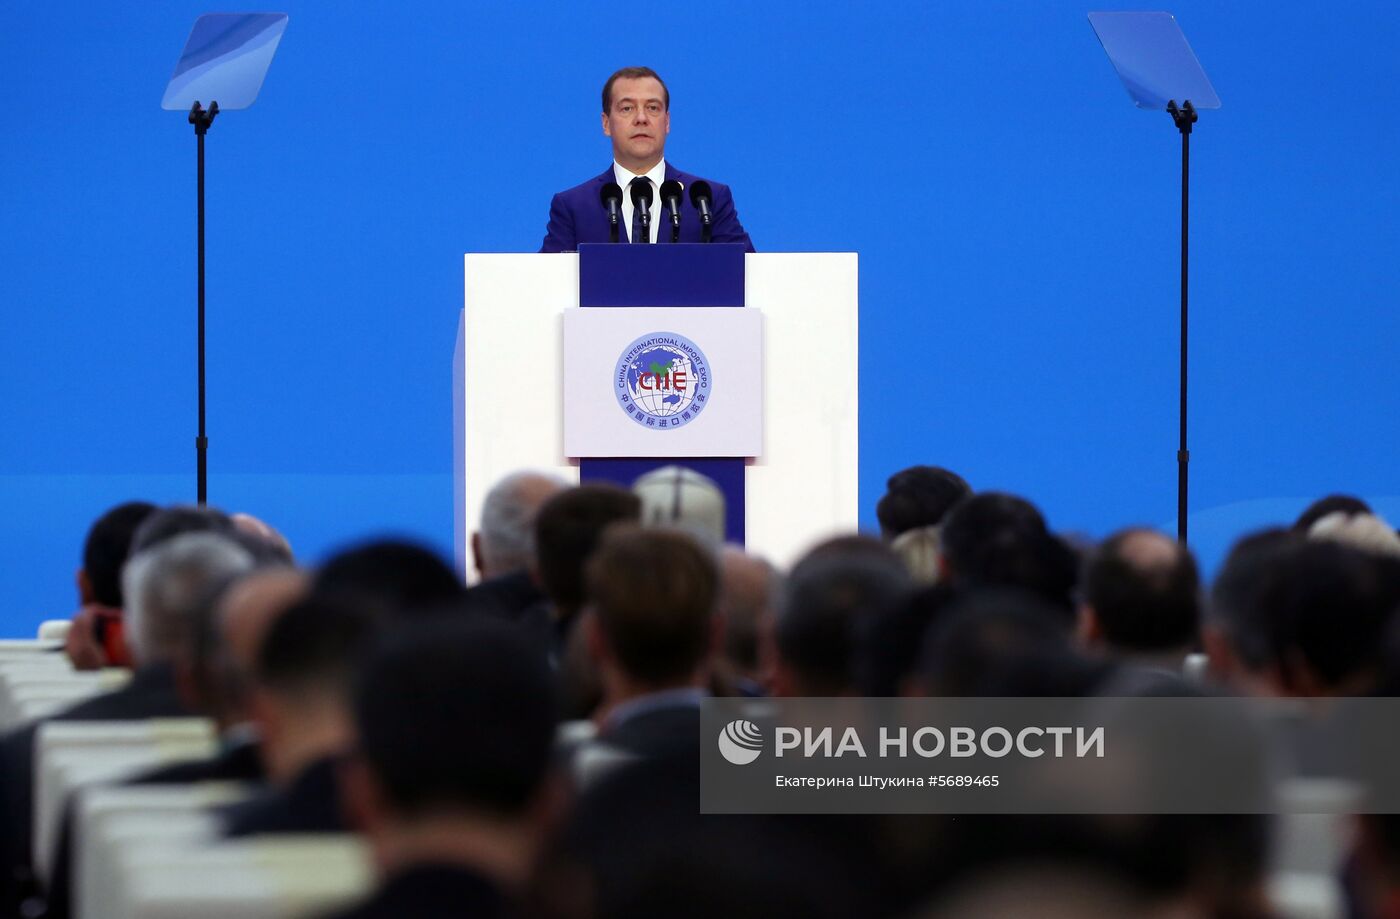 Официальный визит премьер-министр РФ Д. Медведева в КНР